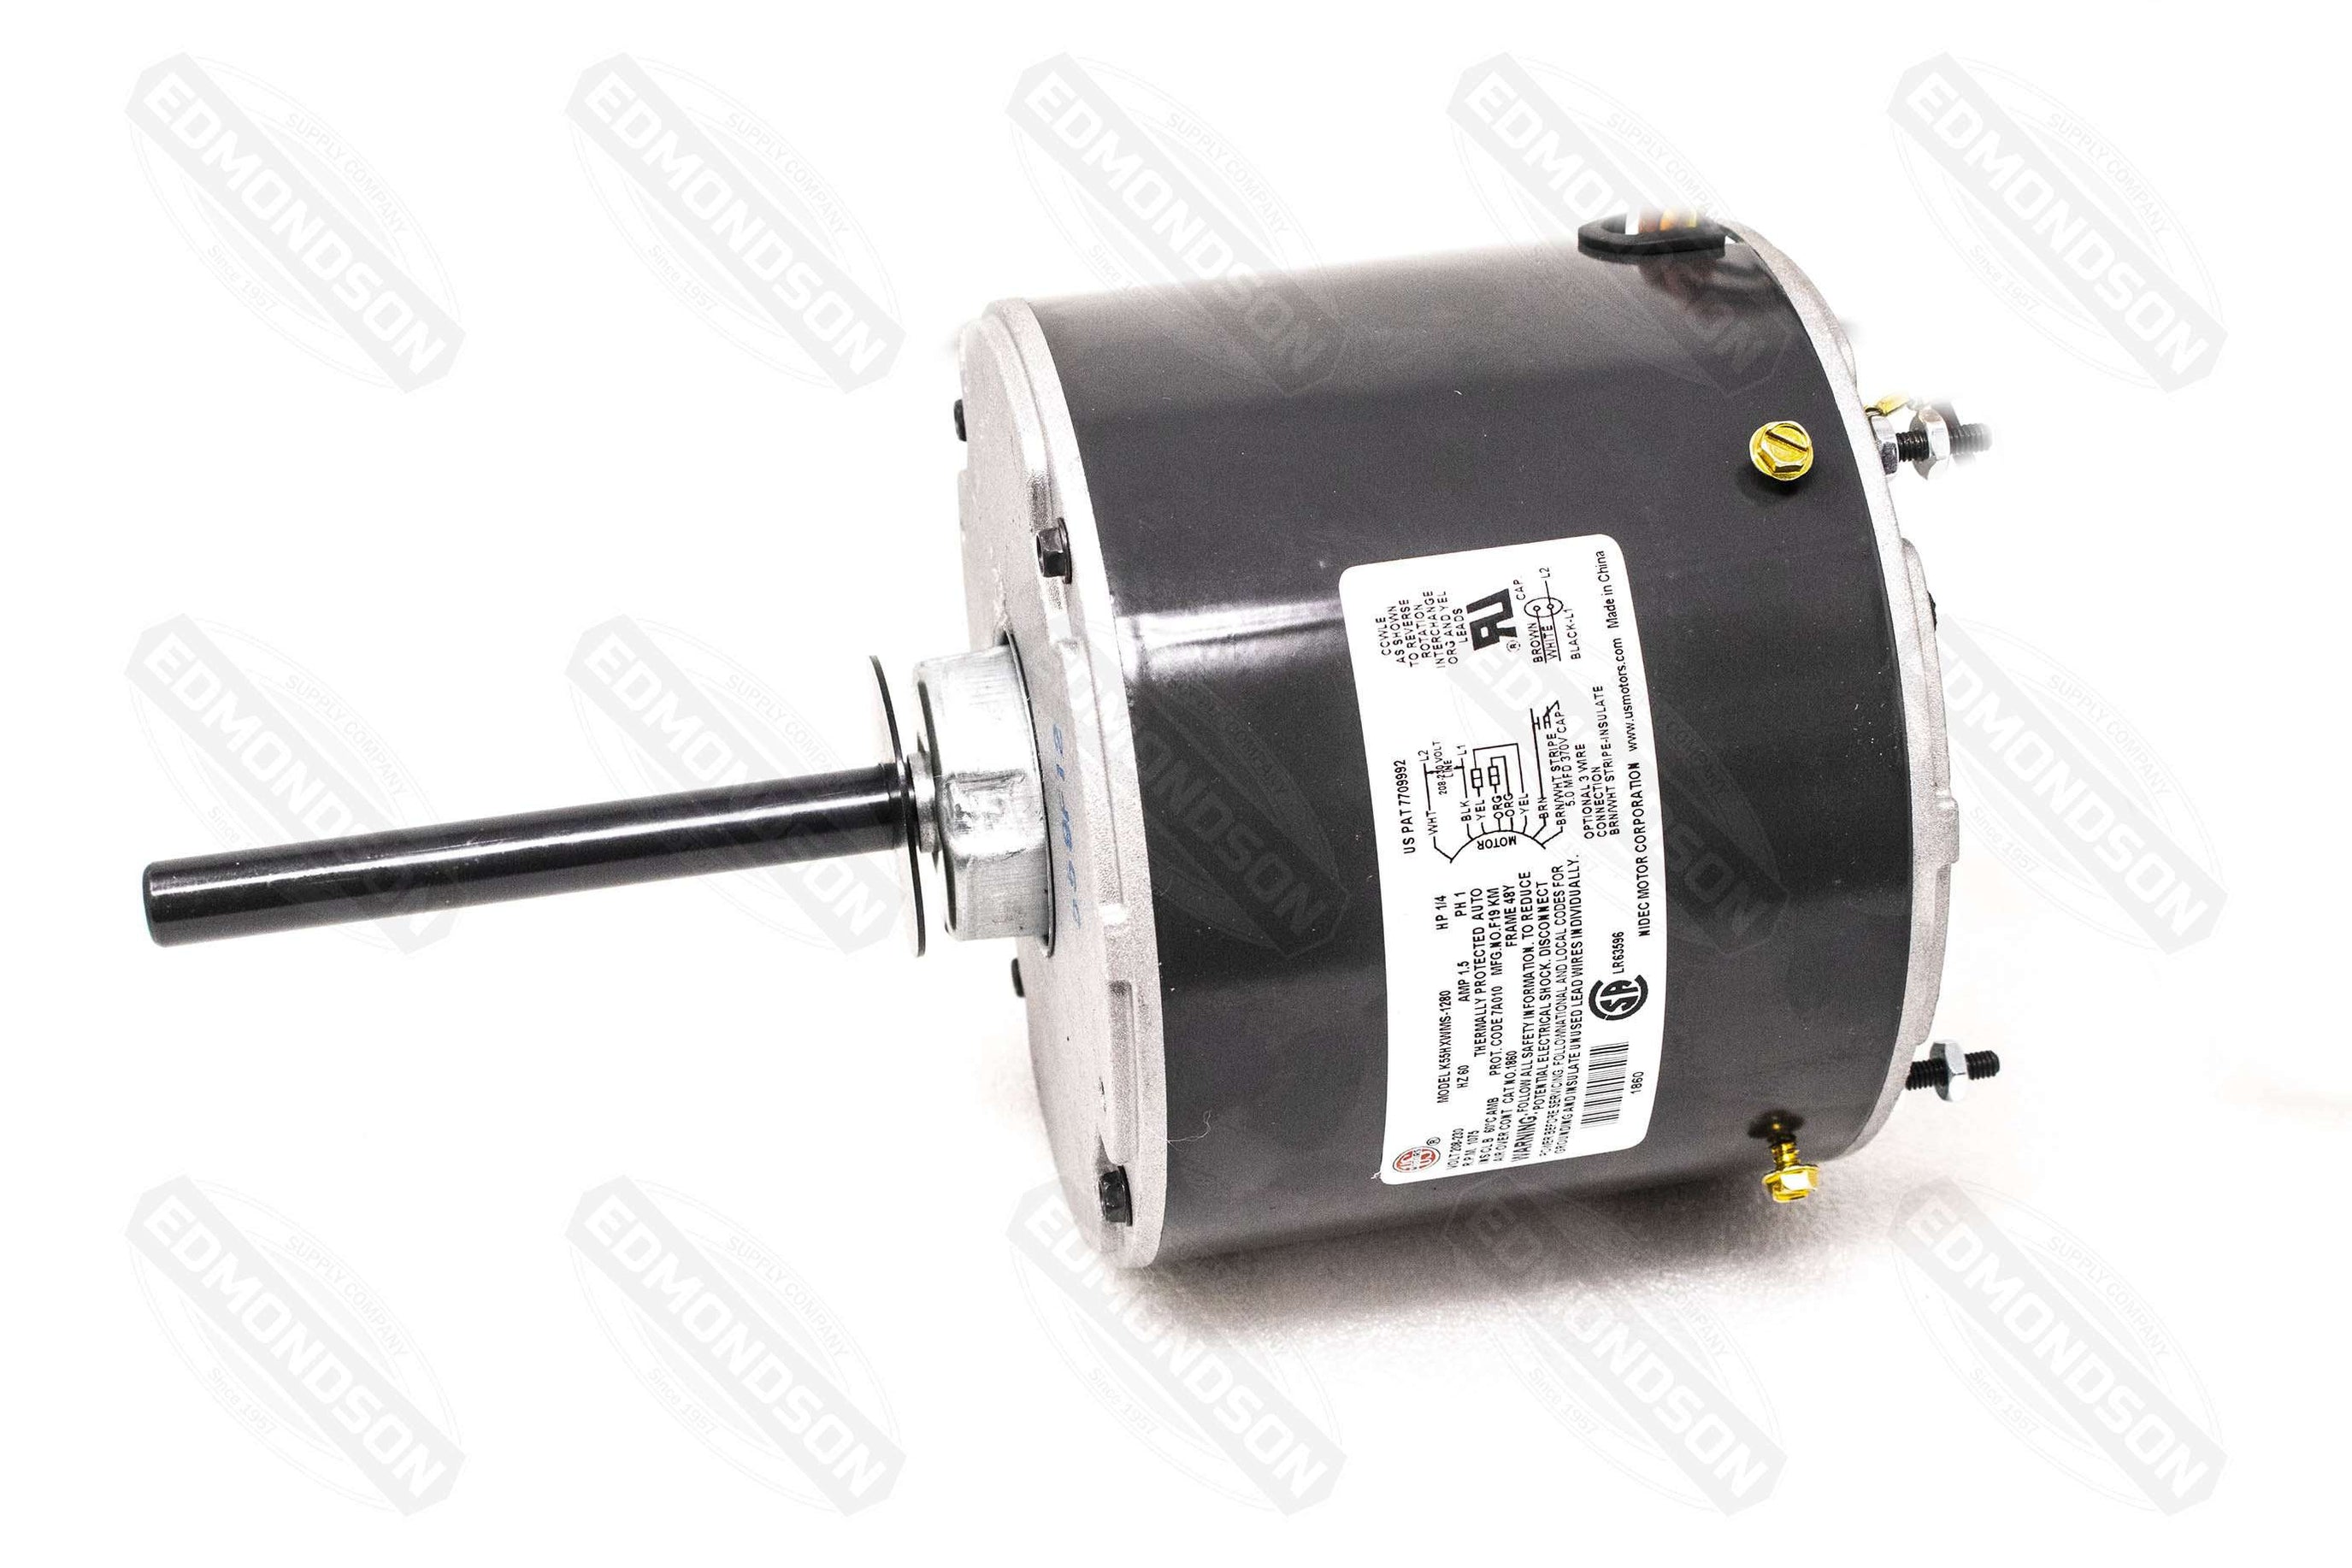 Edmondson Supply | US Motors 1860 5.6" Condenser Fan Motor, 208-230V, 1/4 HP, 1075 RPM, PSC, TEAO